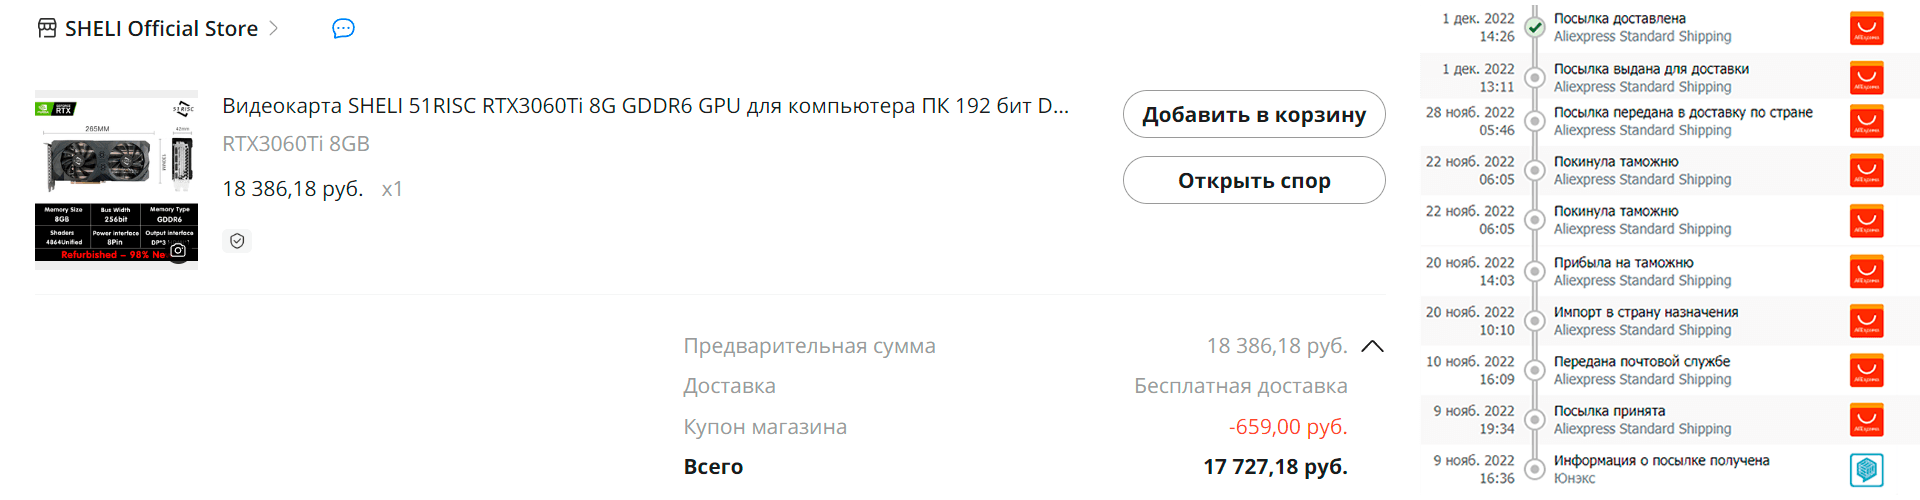 SHELI 51RISC RTX3060Ti 8G aliexpress price цена ноябрьская распродажа november sale